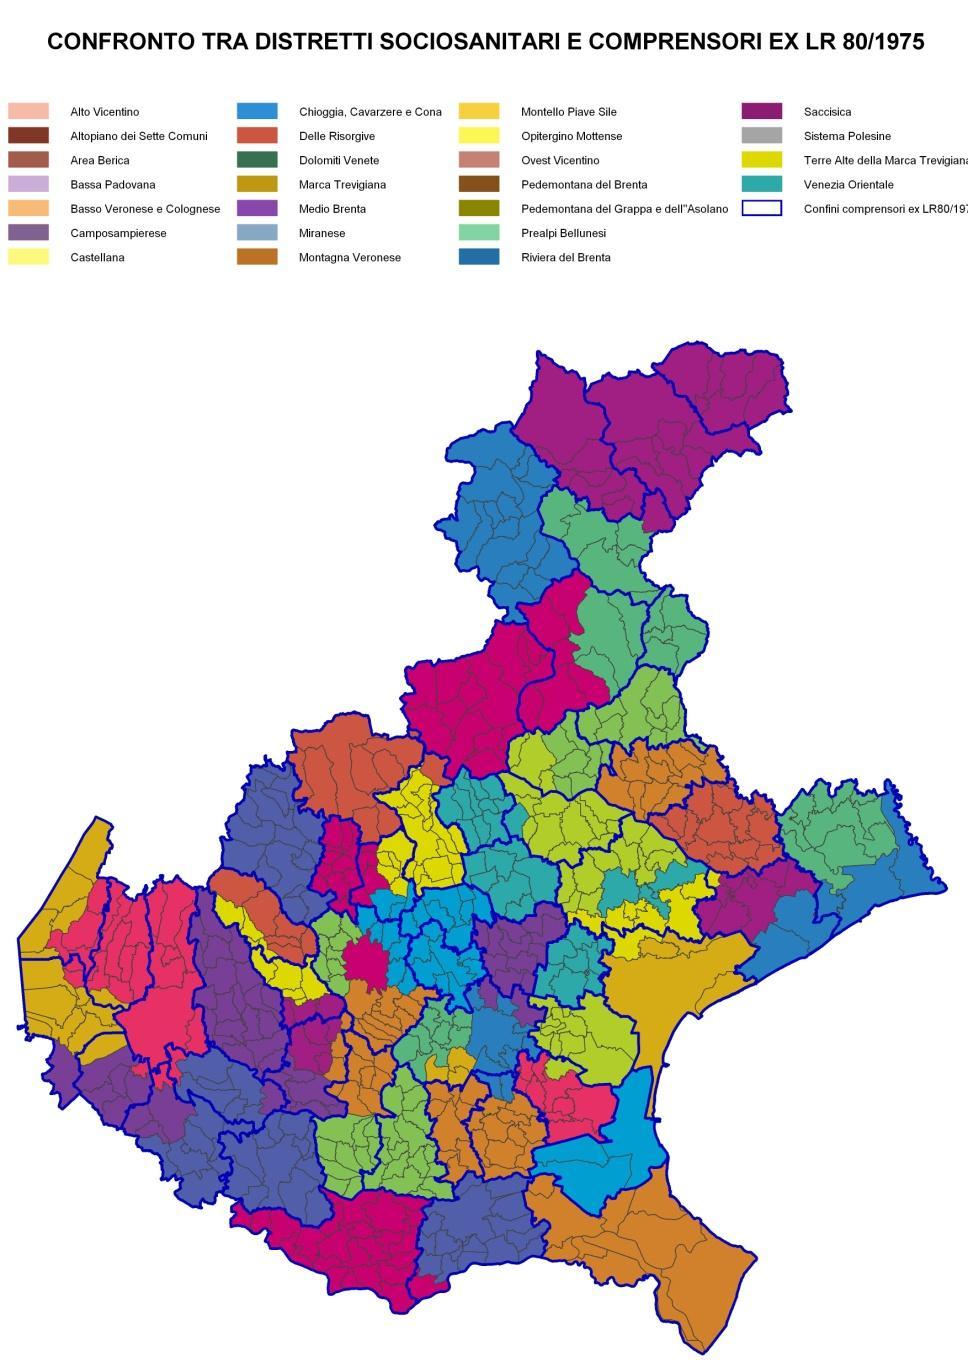 Politiche integrate su basi territoriali (distretti/comprensori) vuol